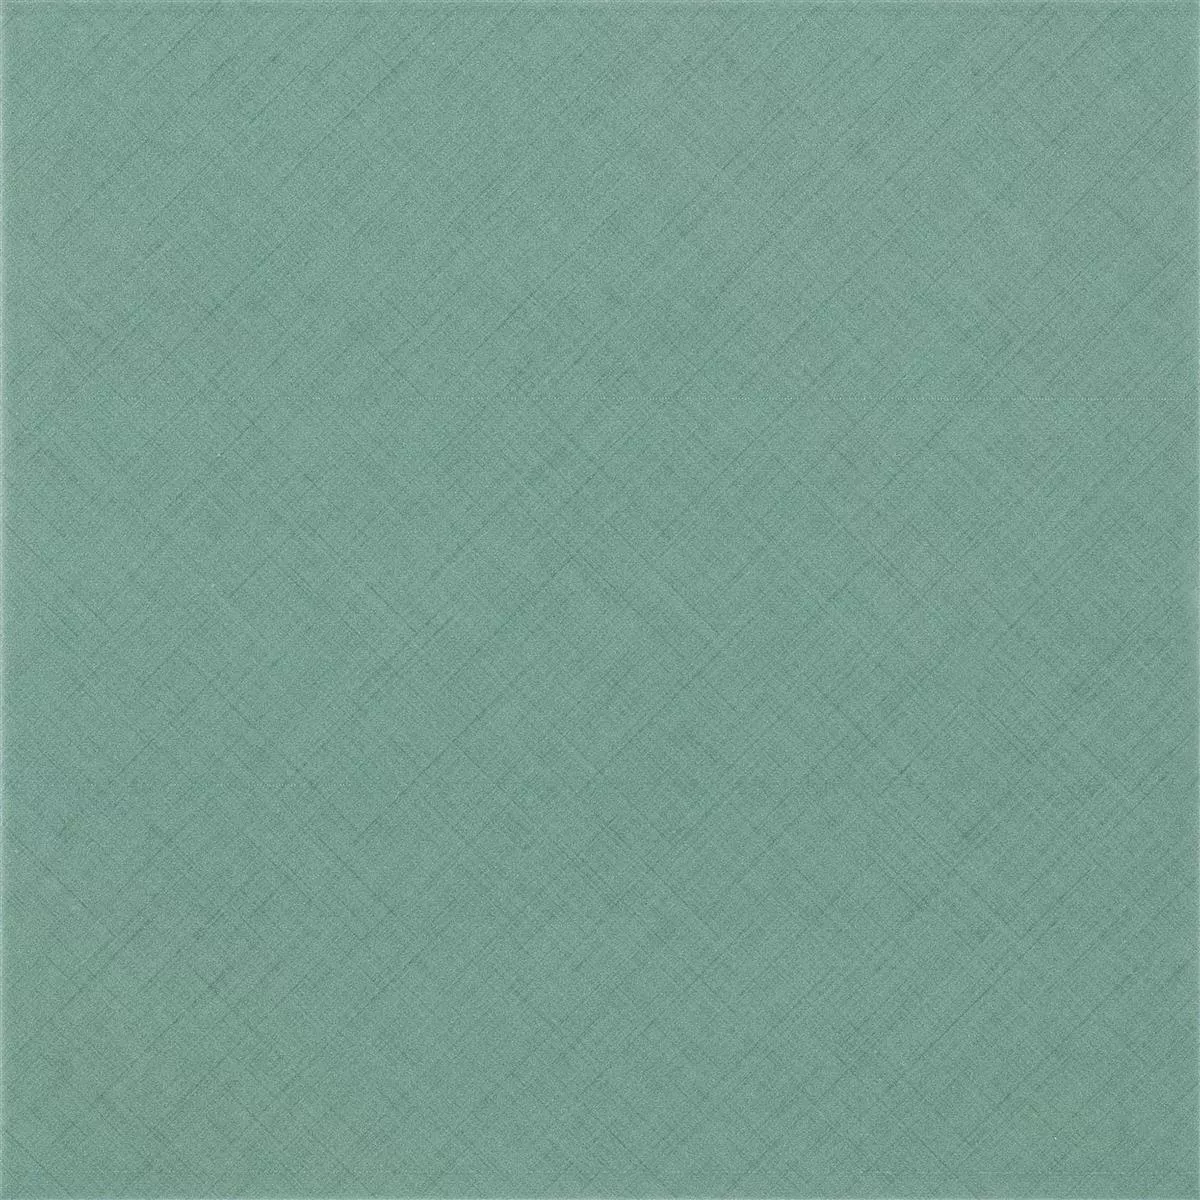 Πλακάκια Δαπέδου Flowerfield 18,5x18,5cm Πράσινος Πλακάκι Bάσης